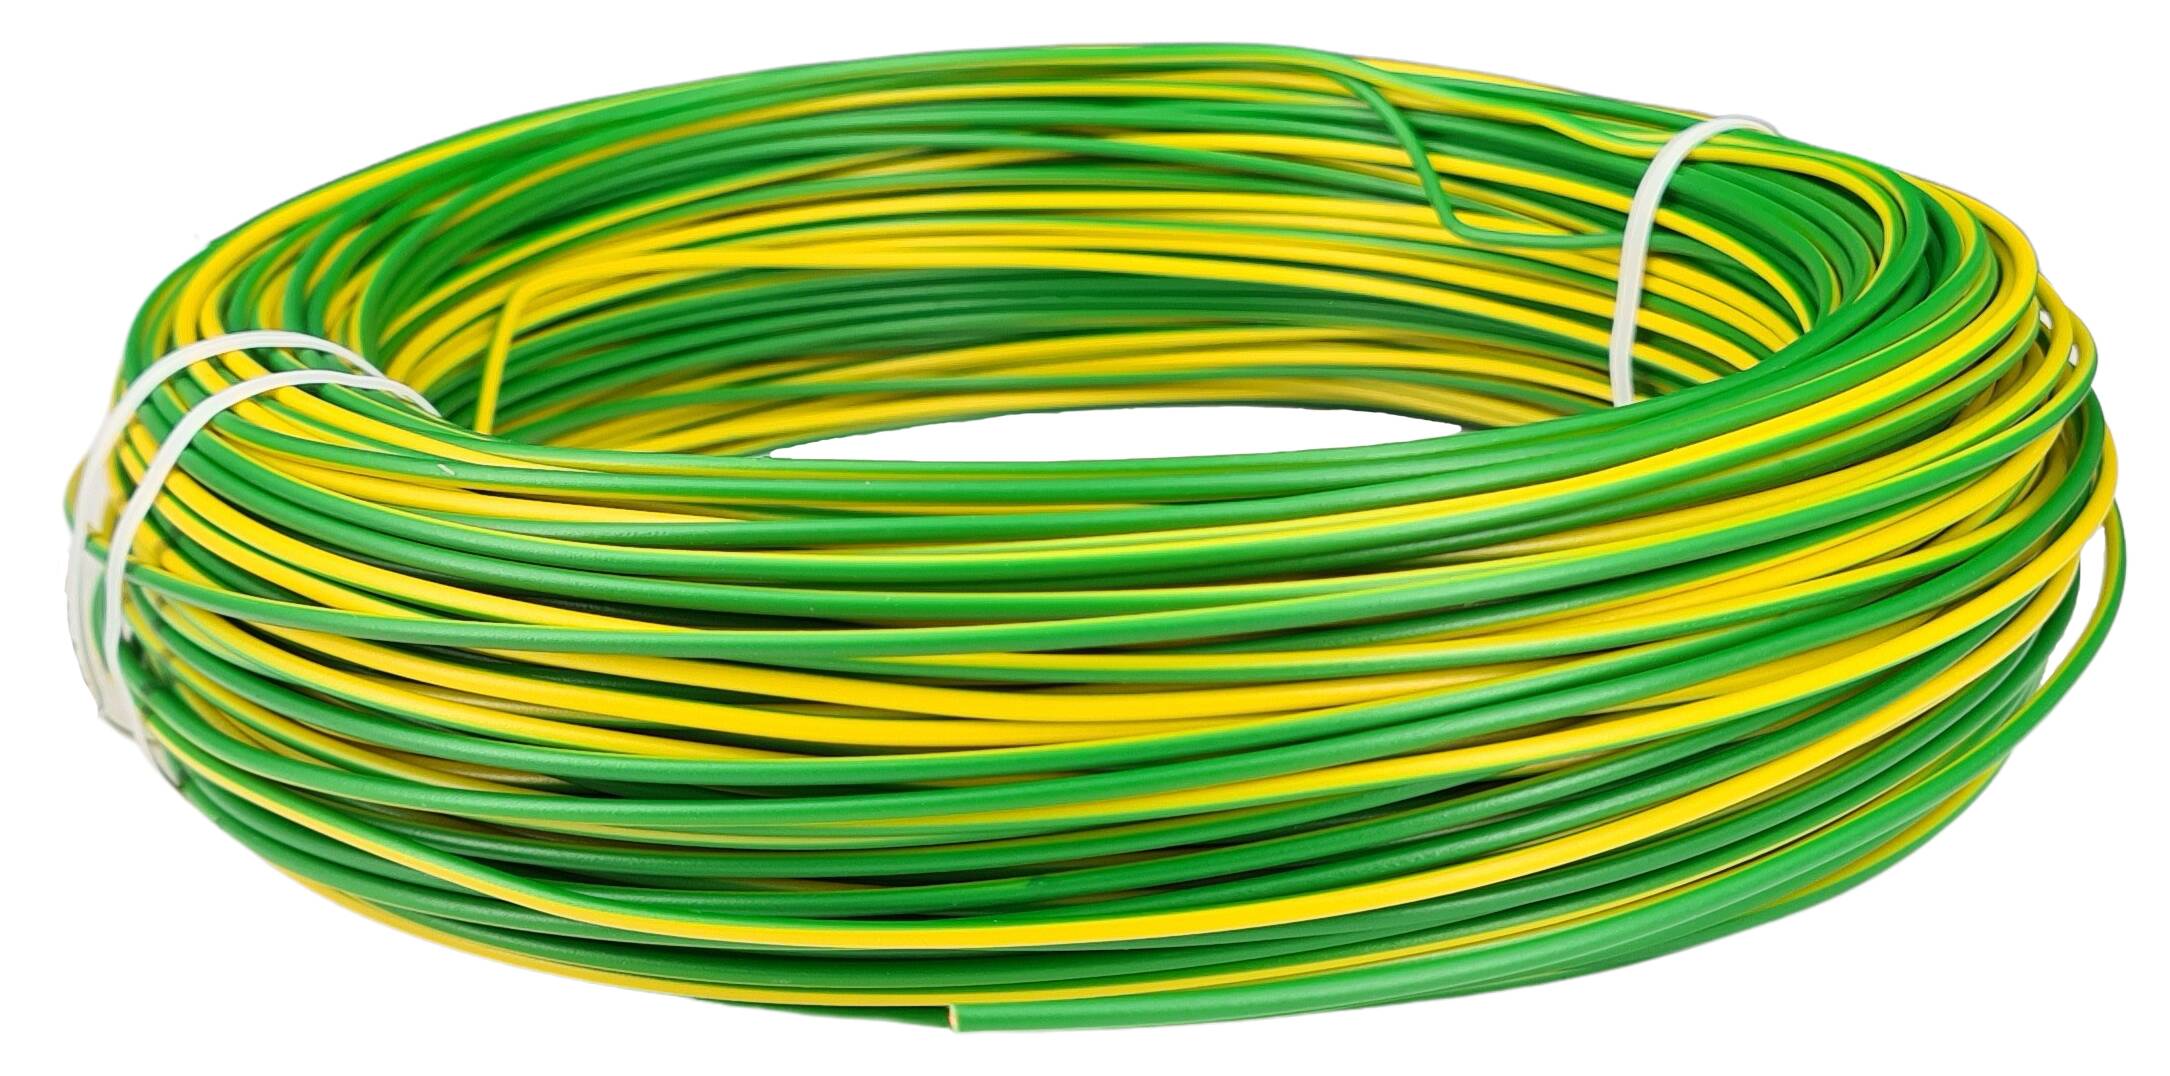 Kabel 1x0,75 H05V2-U starr grün-gelb